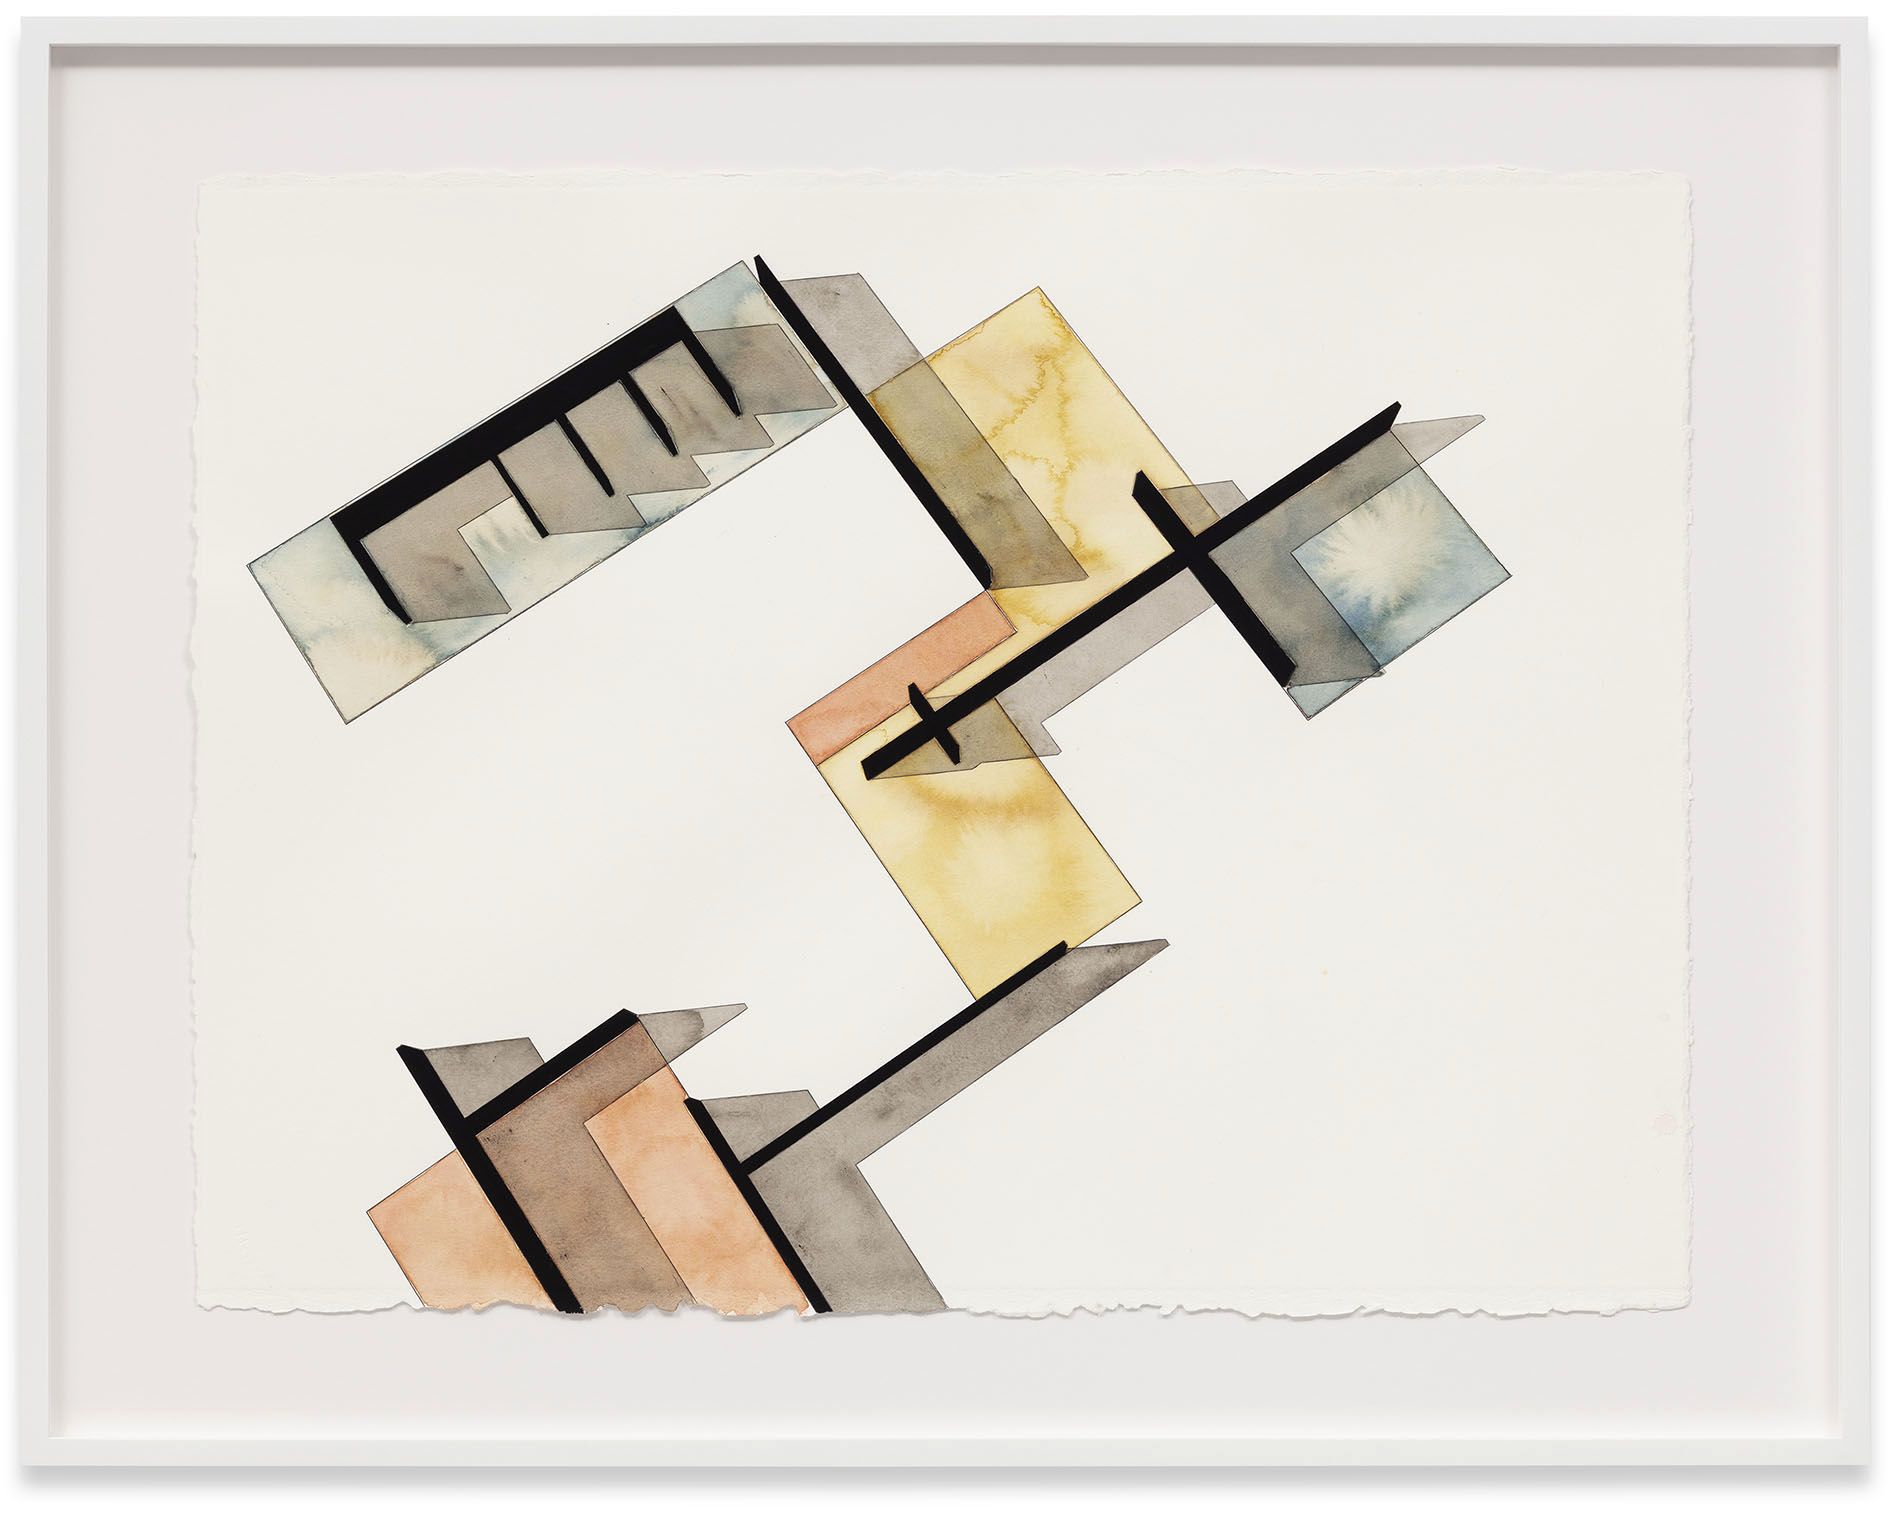 Andrea Zittel – Works on Paper – Berlin